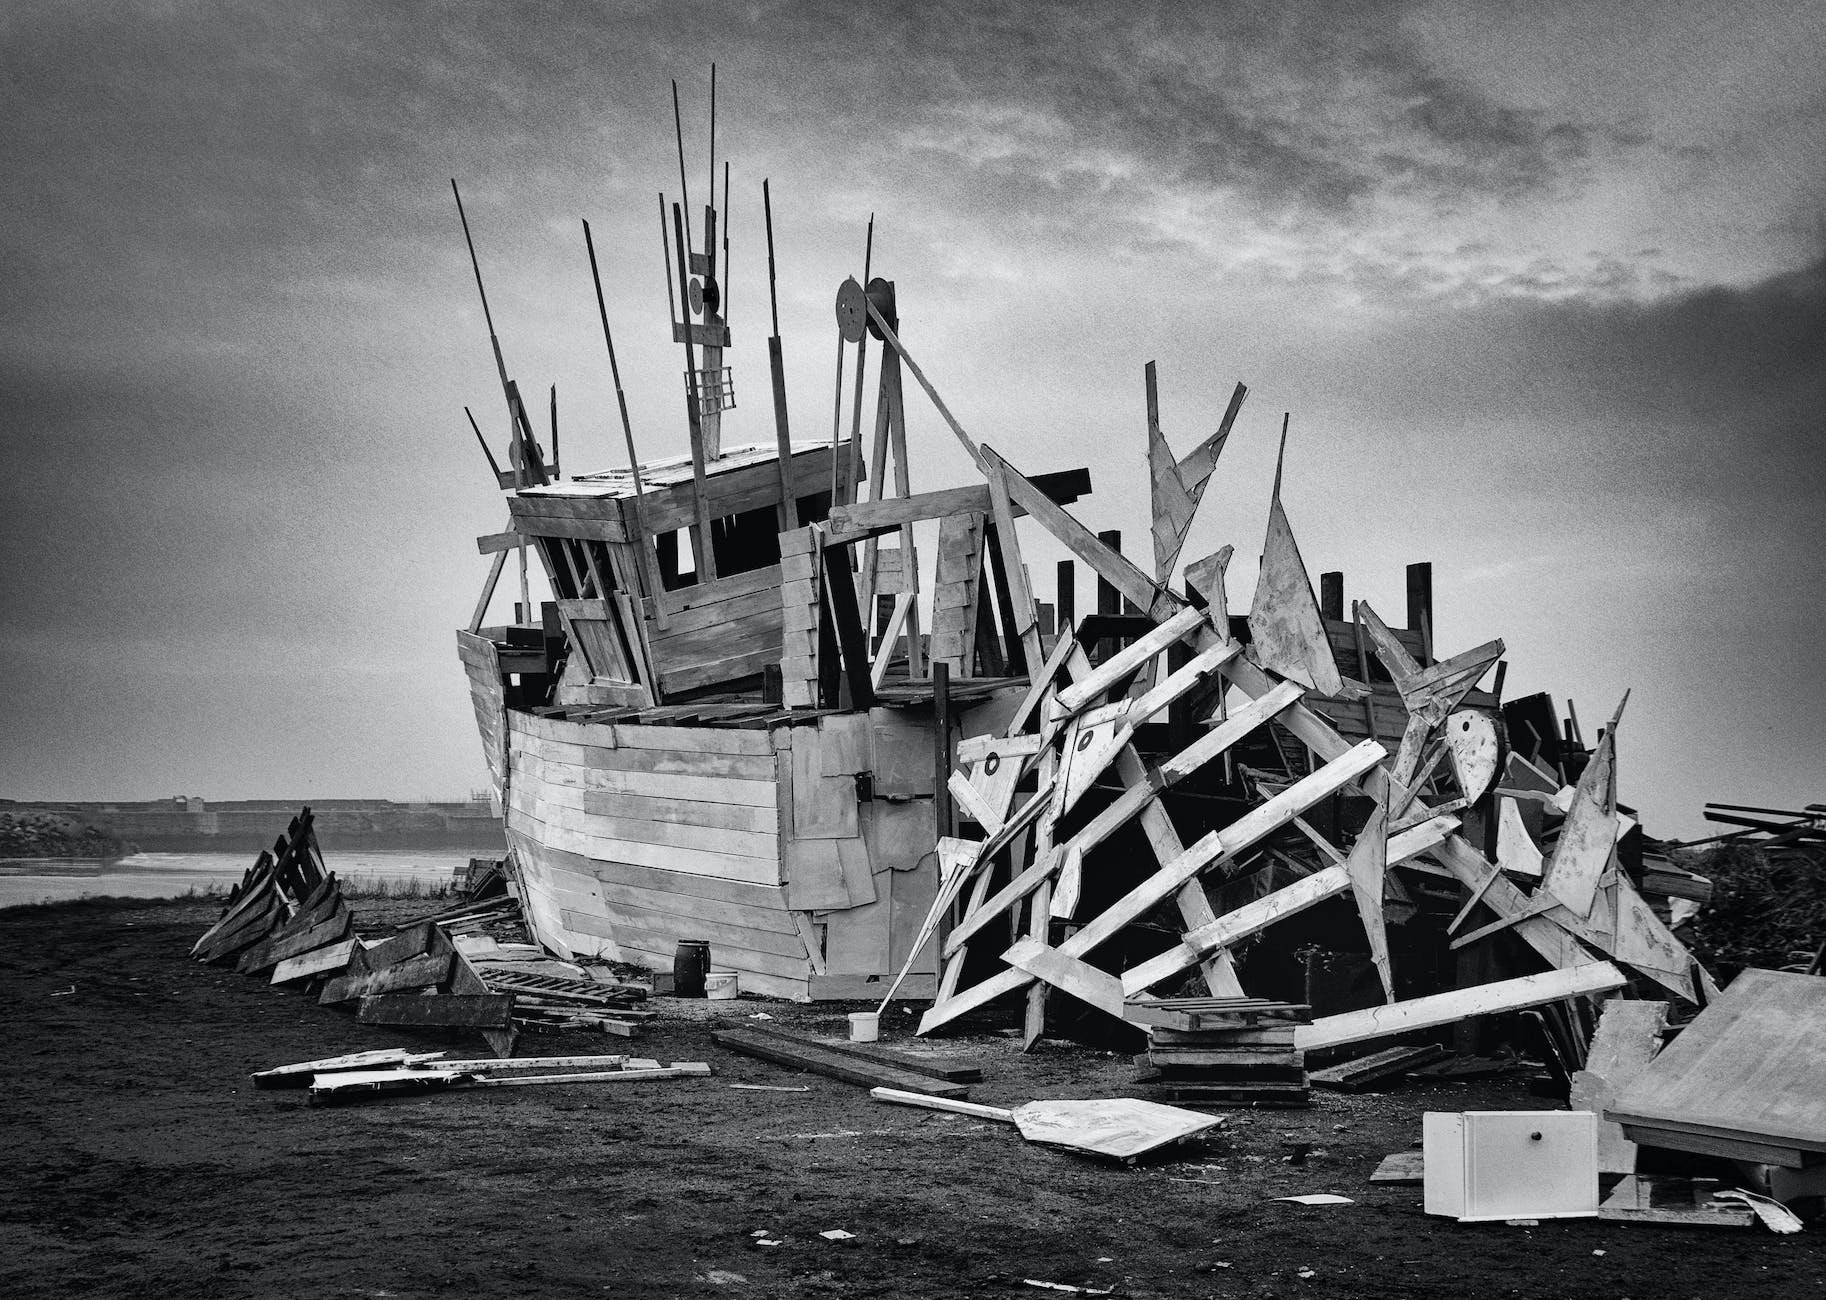 broken boat shipwreck for not heeding warning